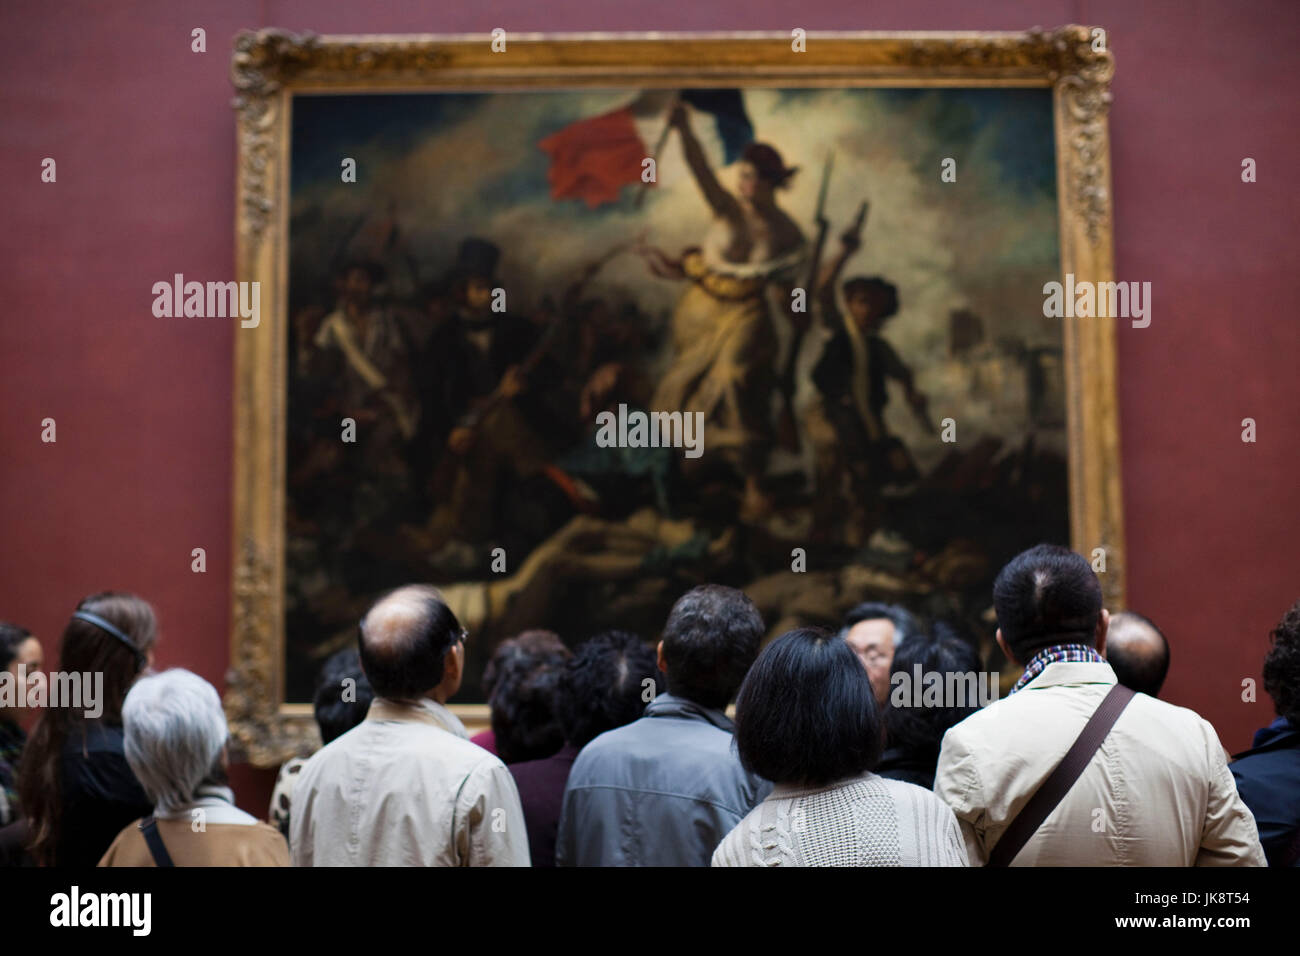 Francia, París, Musée du Louvre, la galería de pintura francesa del siglo XIX, los visitantes a la pintura La Libertad guiando a la gente por Delacroix Foto de stock